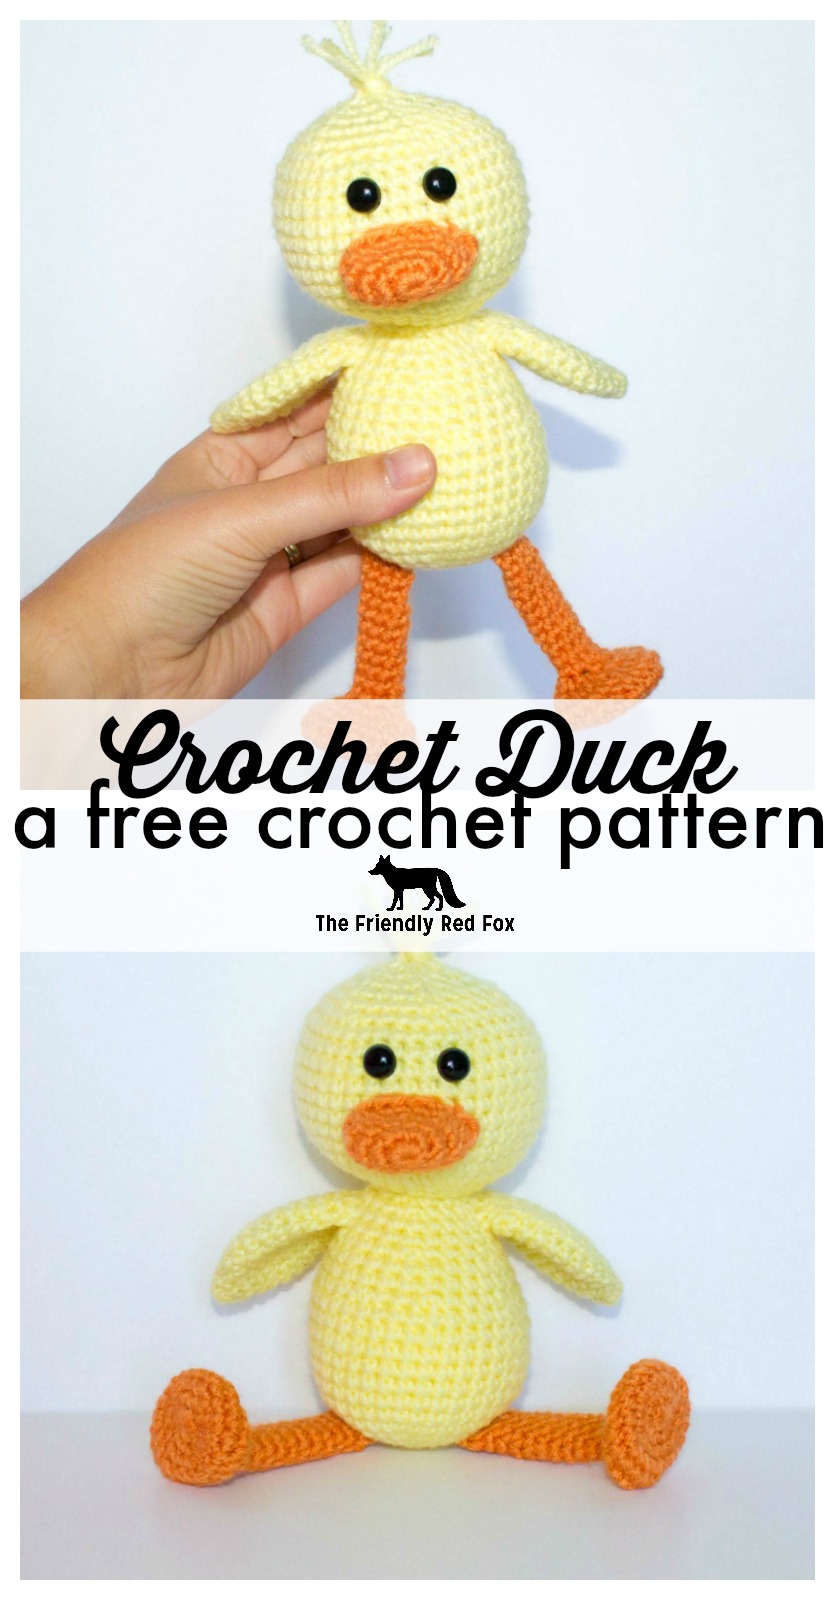 Crochet Duck Pattern